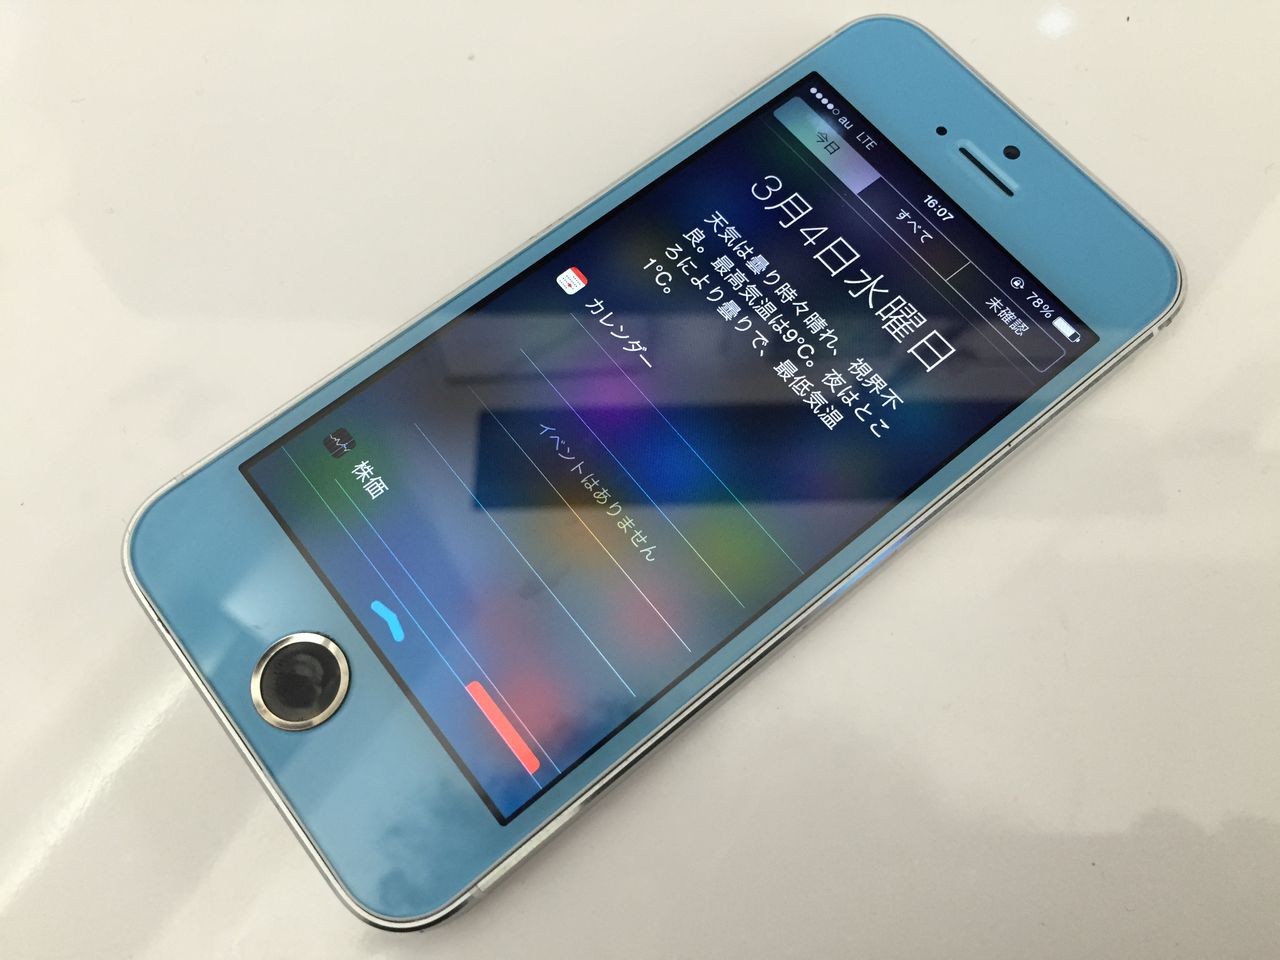 徳島駅前店 Iphone5sカスタム やっぱりカスタムがかっこいい Iphone専門店 徳島 スマホ堂オフィシャルブログ